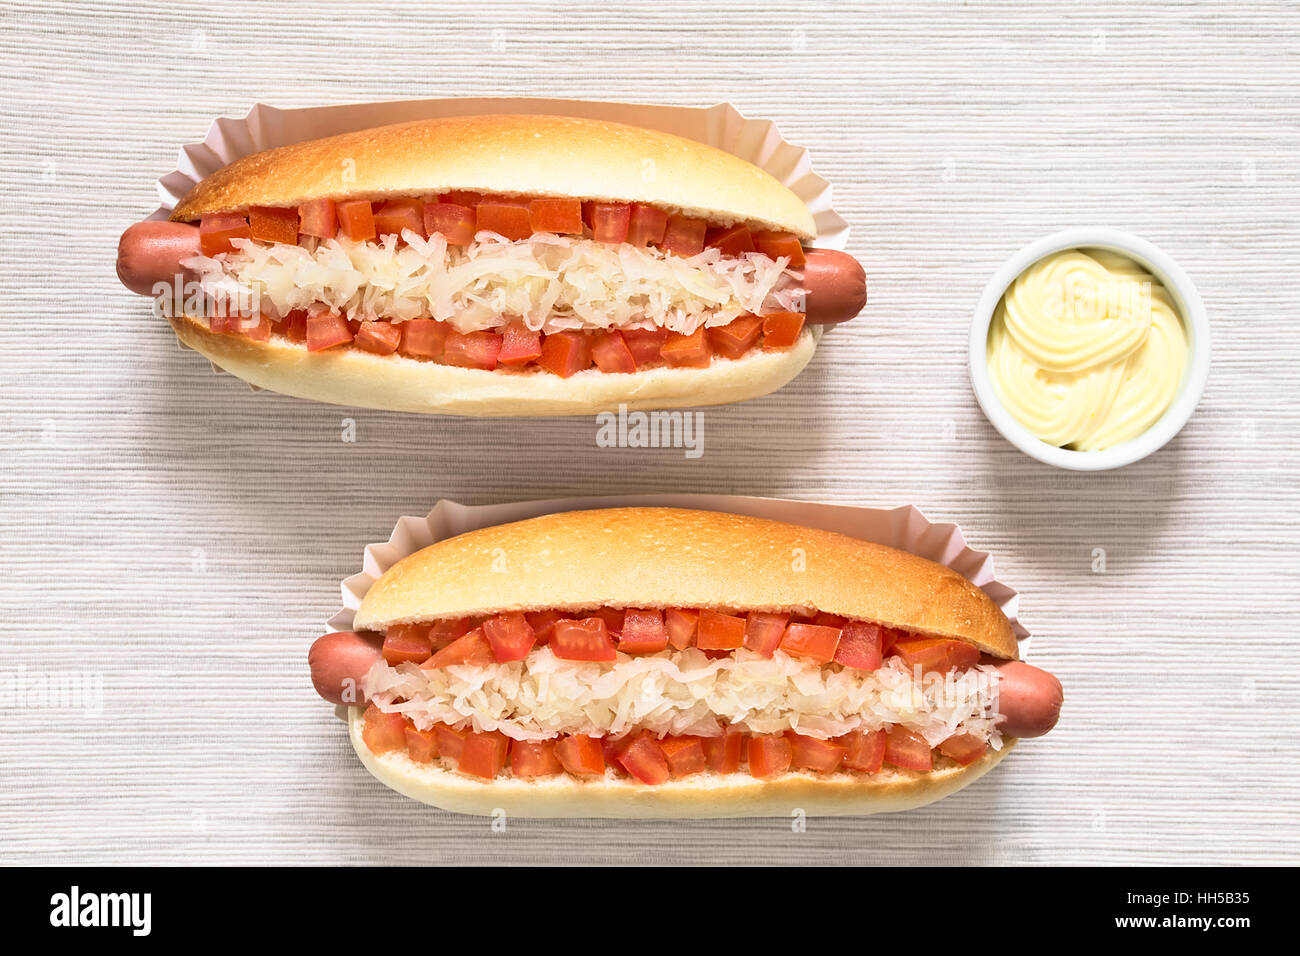 Chilenische Completo Clasico (klassisch) oder Aleman (Deutsch) traditionellen Hot-Dog Brötchen mit Tomate und sauerkraut Stockfoto